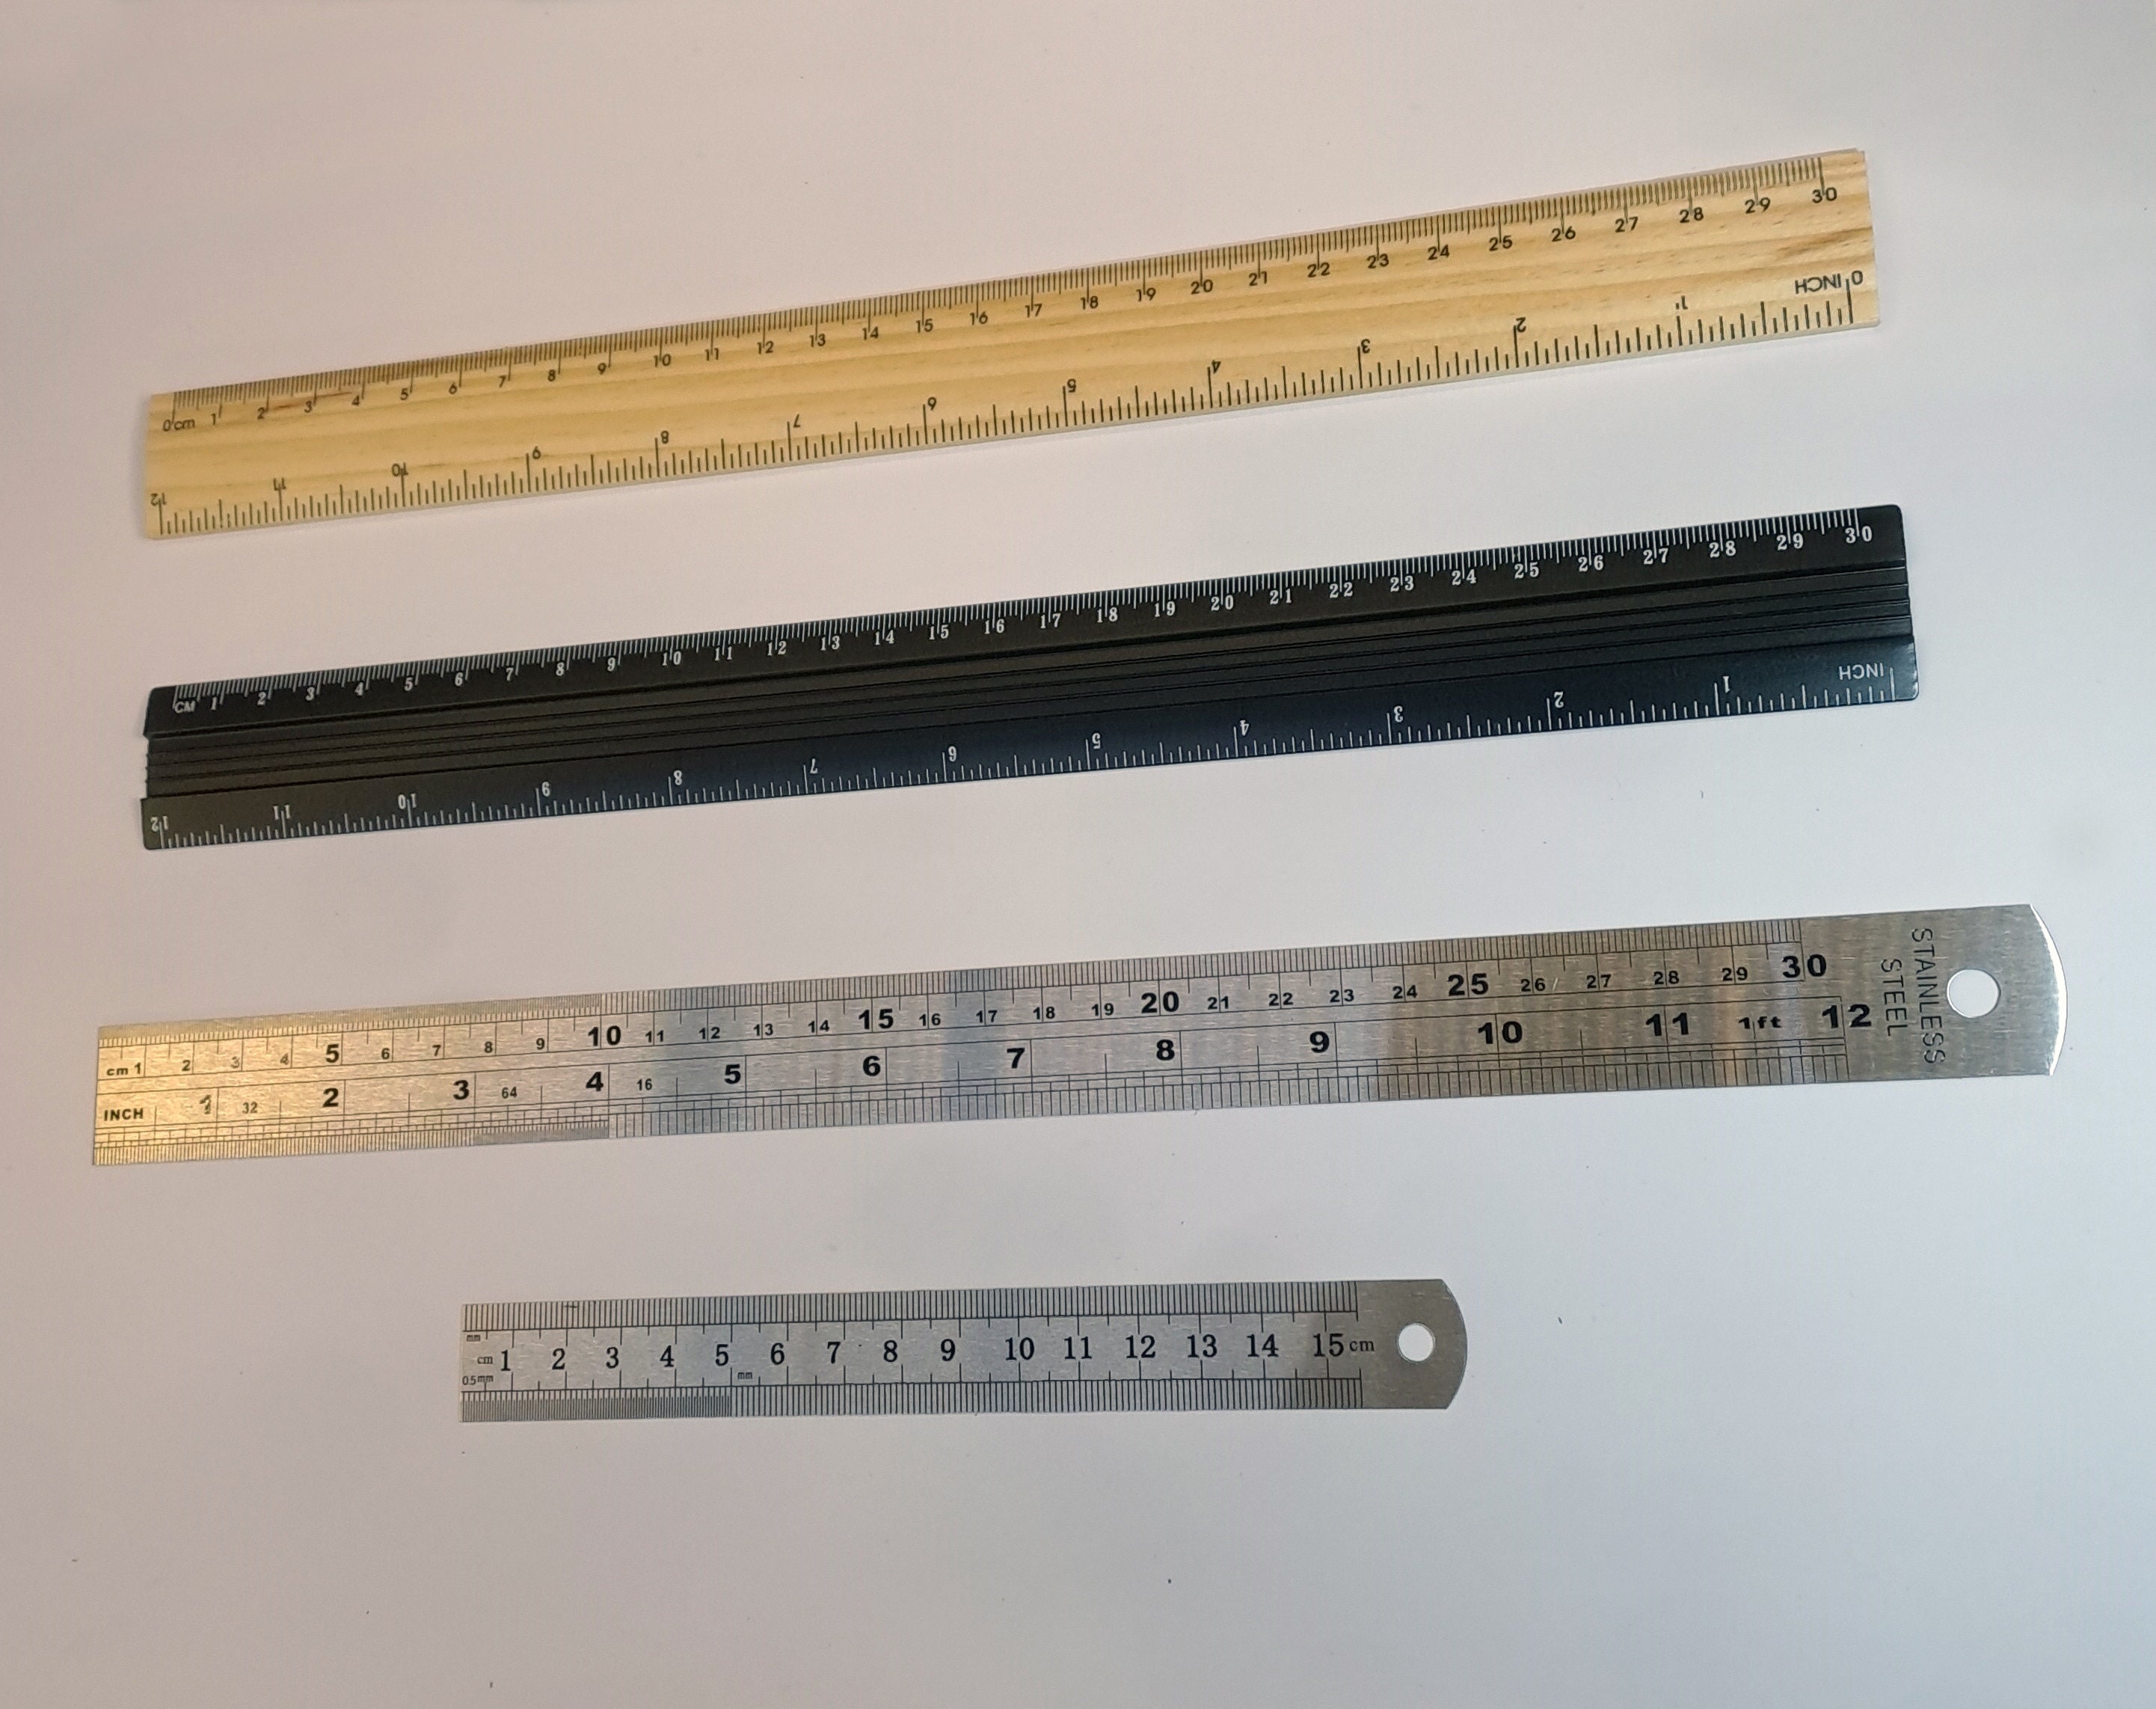 ZZTX Ruler Metal Straight Edge Ruler Stainless Steel Ruler 6 inch 12 inch 16 inch Ruler Set Rulers Bulk Set of 3